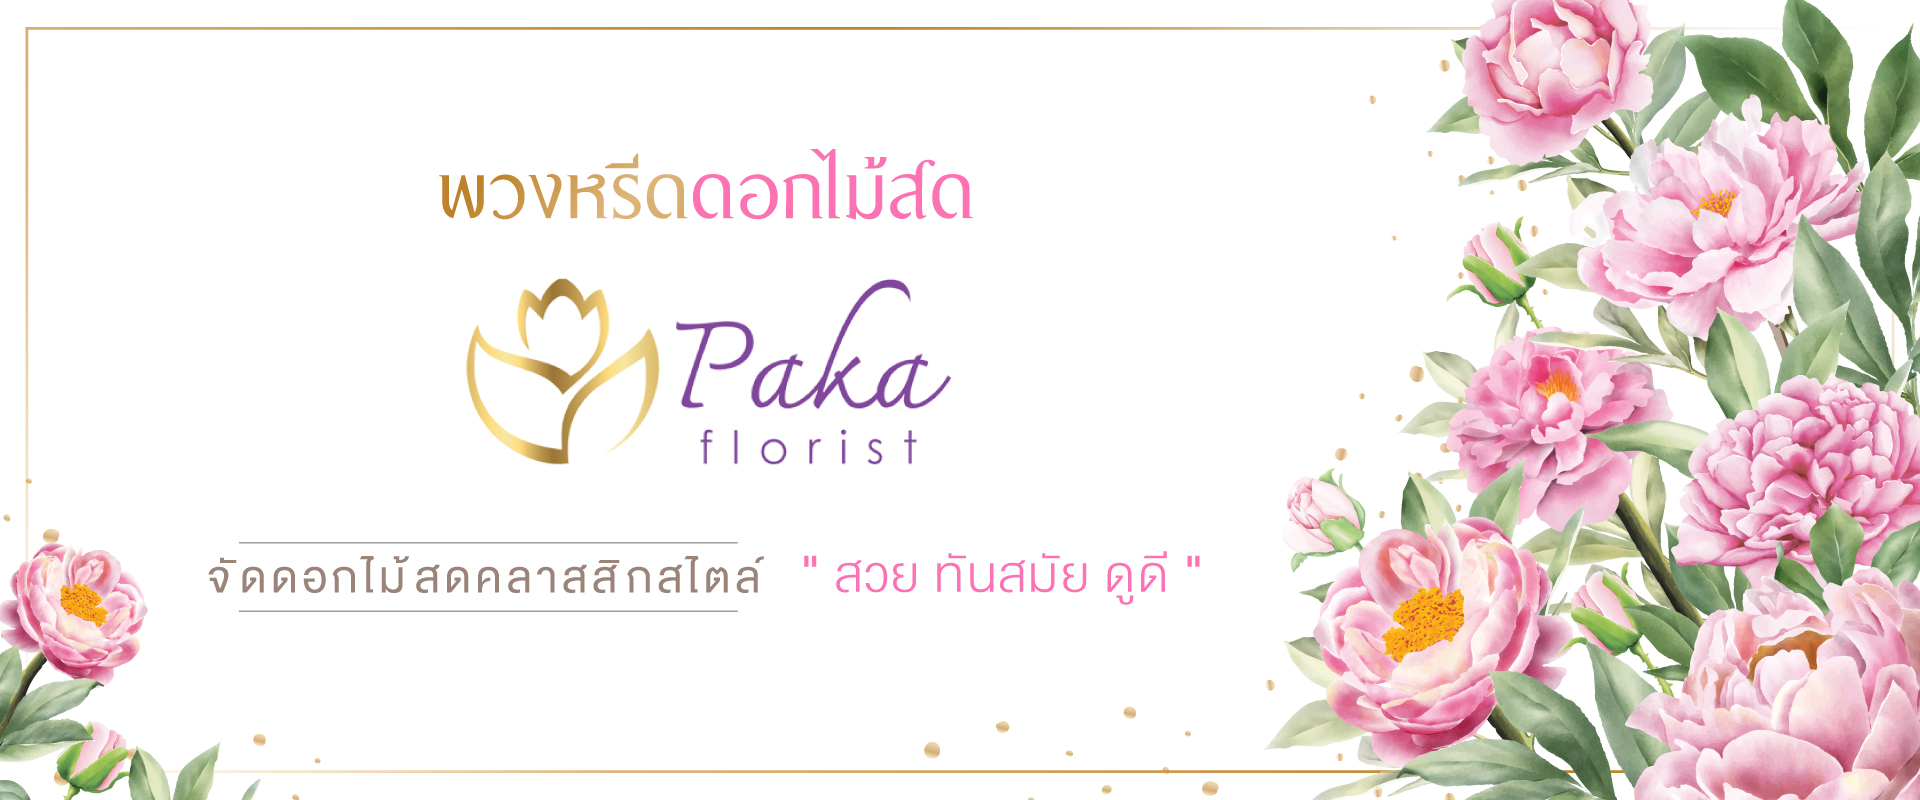 Pakaflorist-banner-จัดดอกไม้สดคลาสิกสไตล์